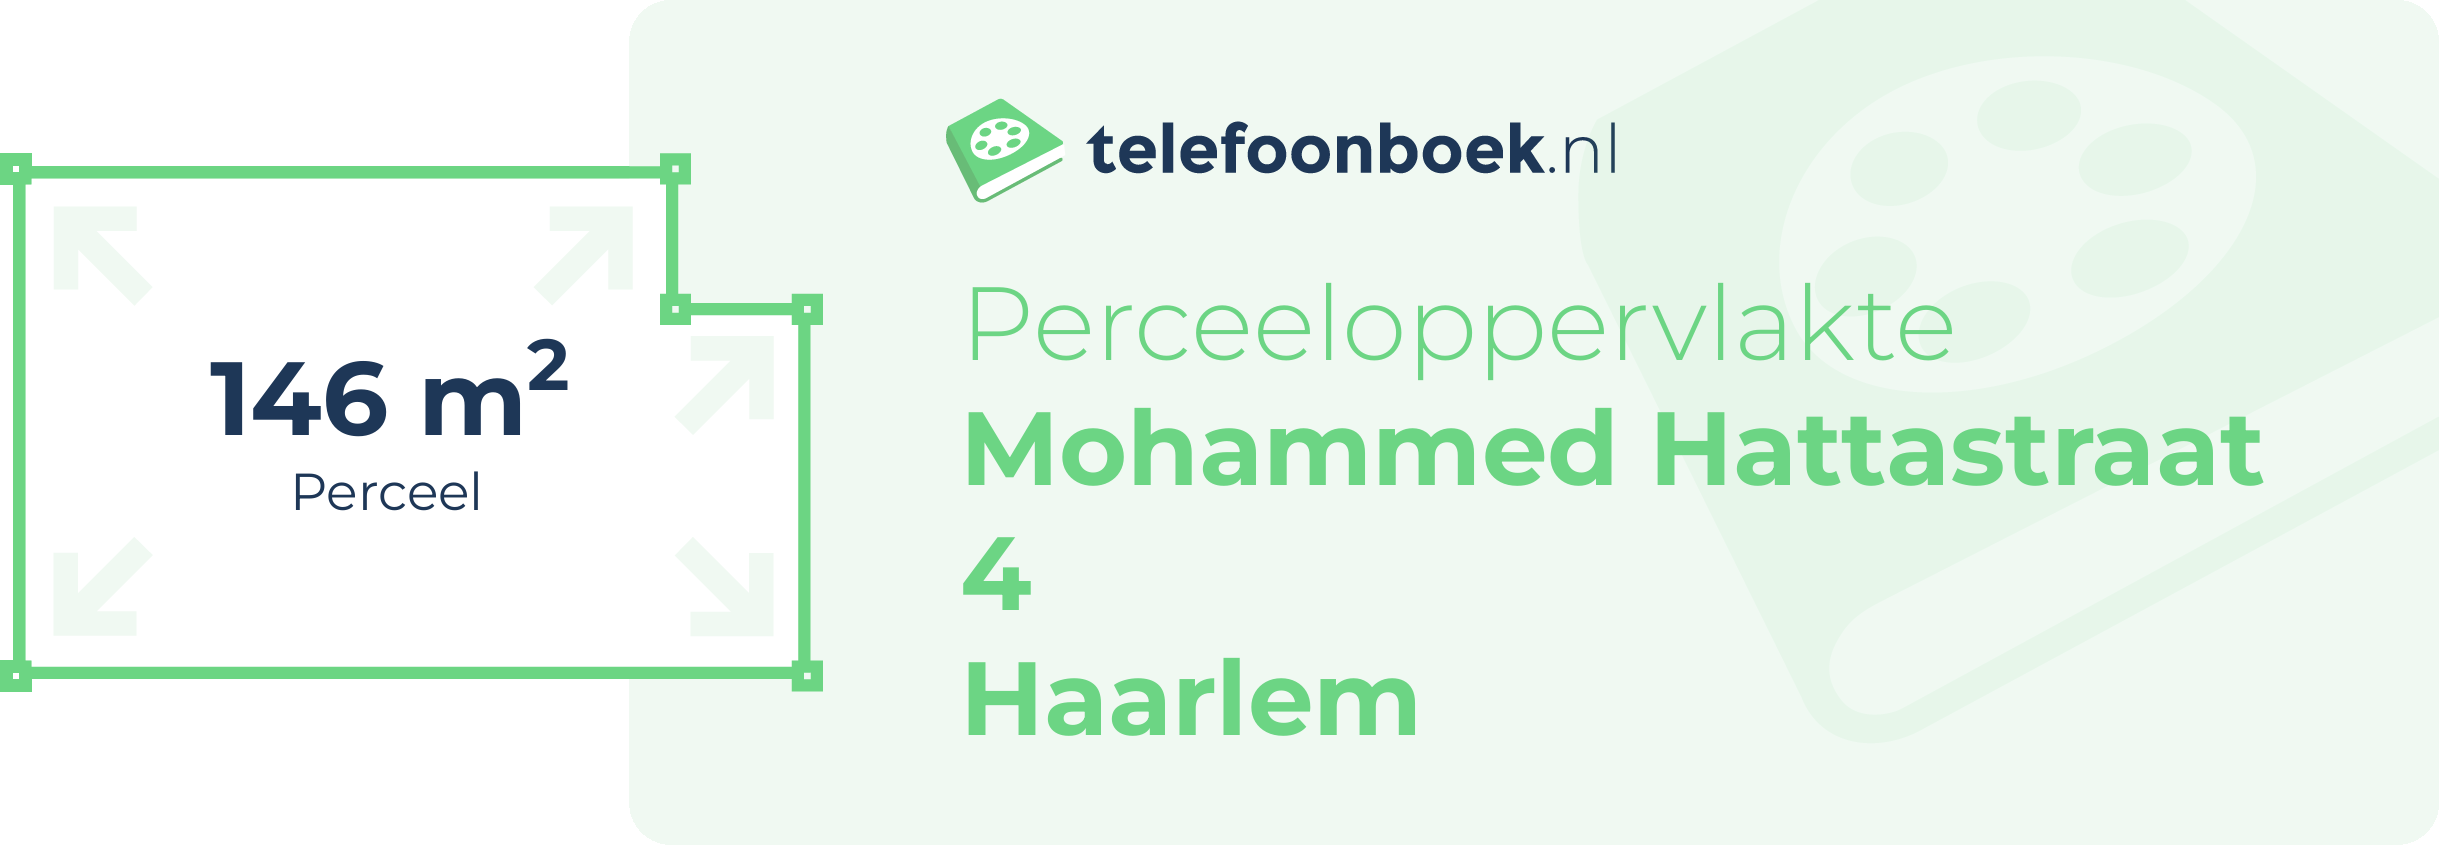 Perceeloppervlakte Mohammed Hattastraat 4 Haarlem